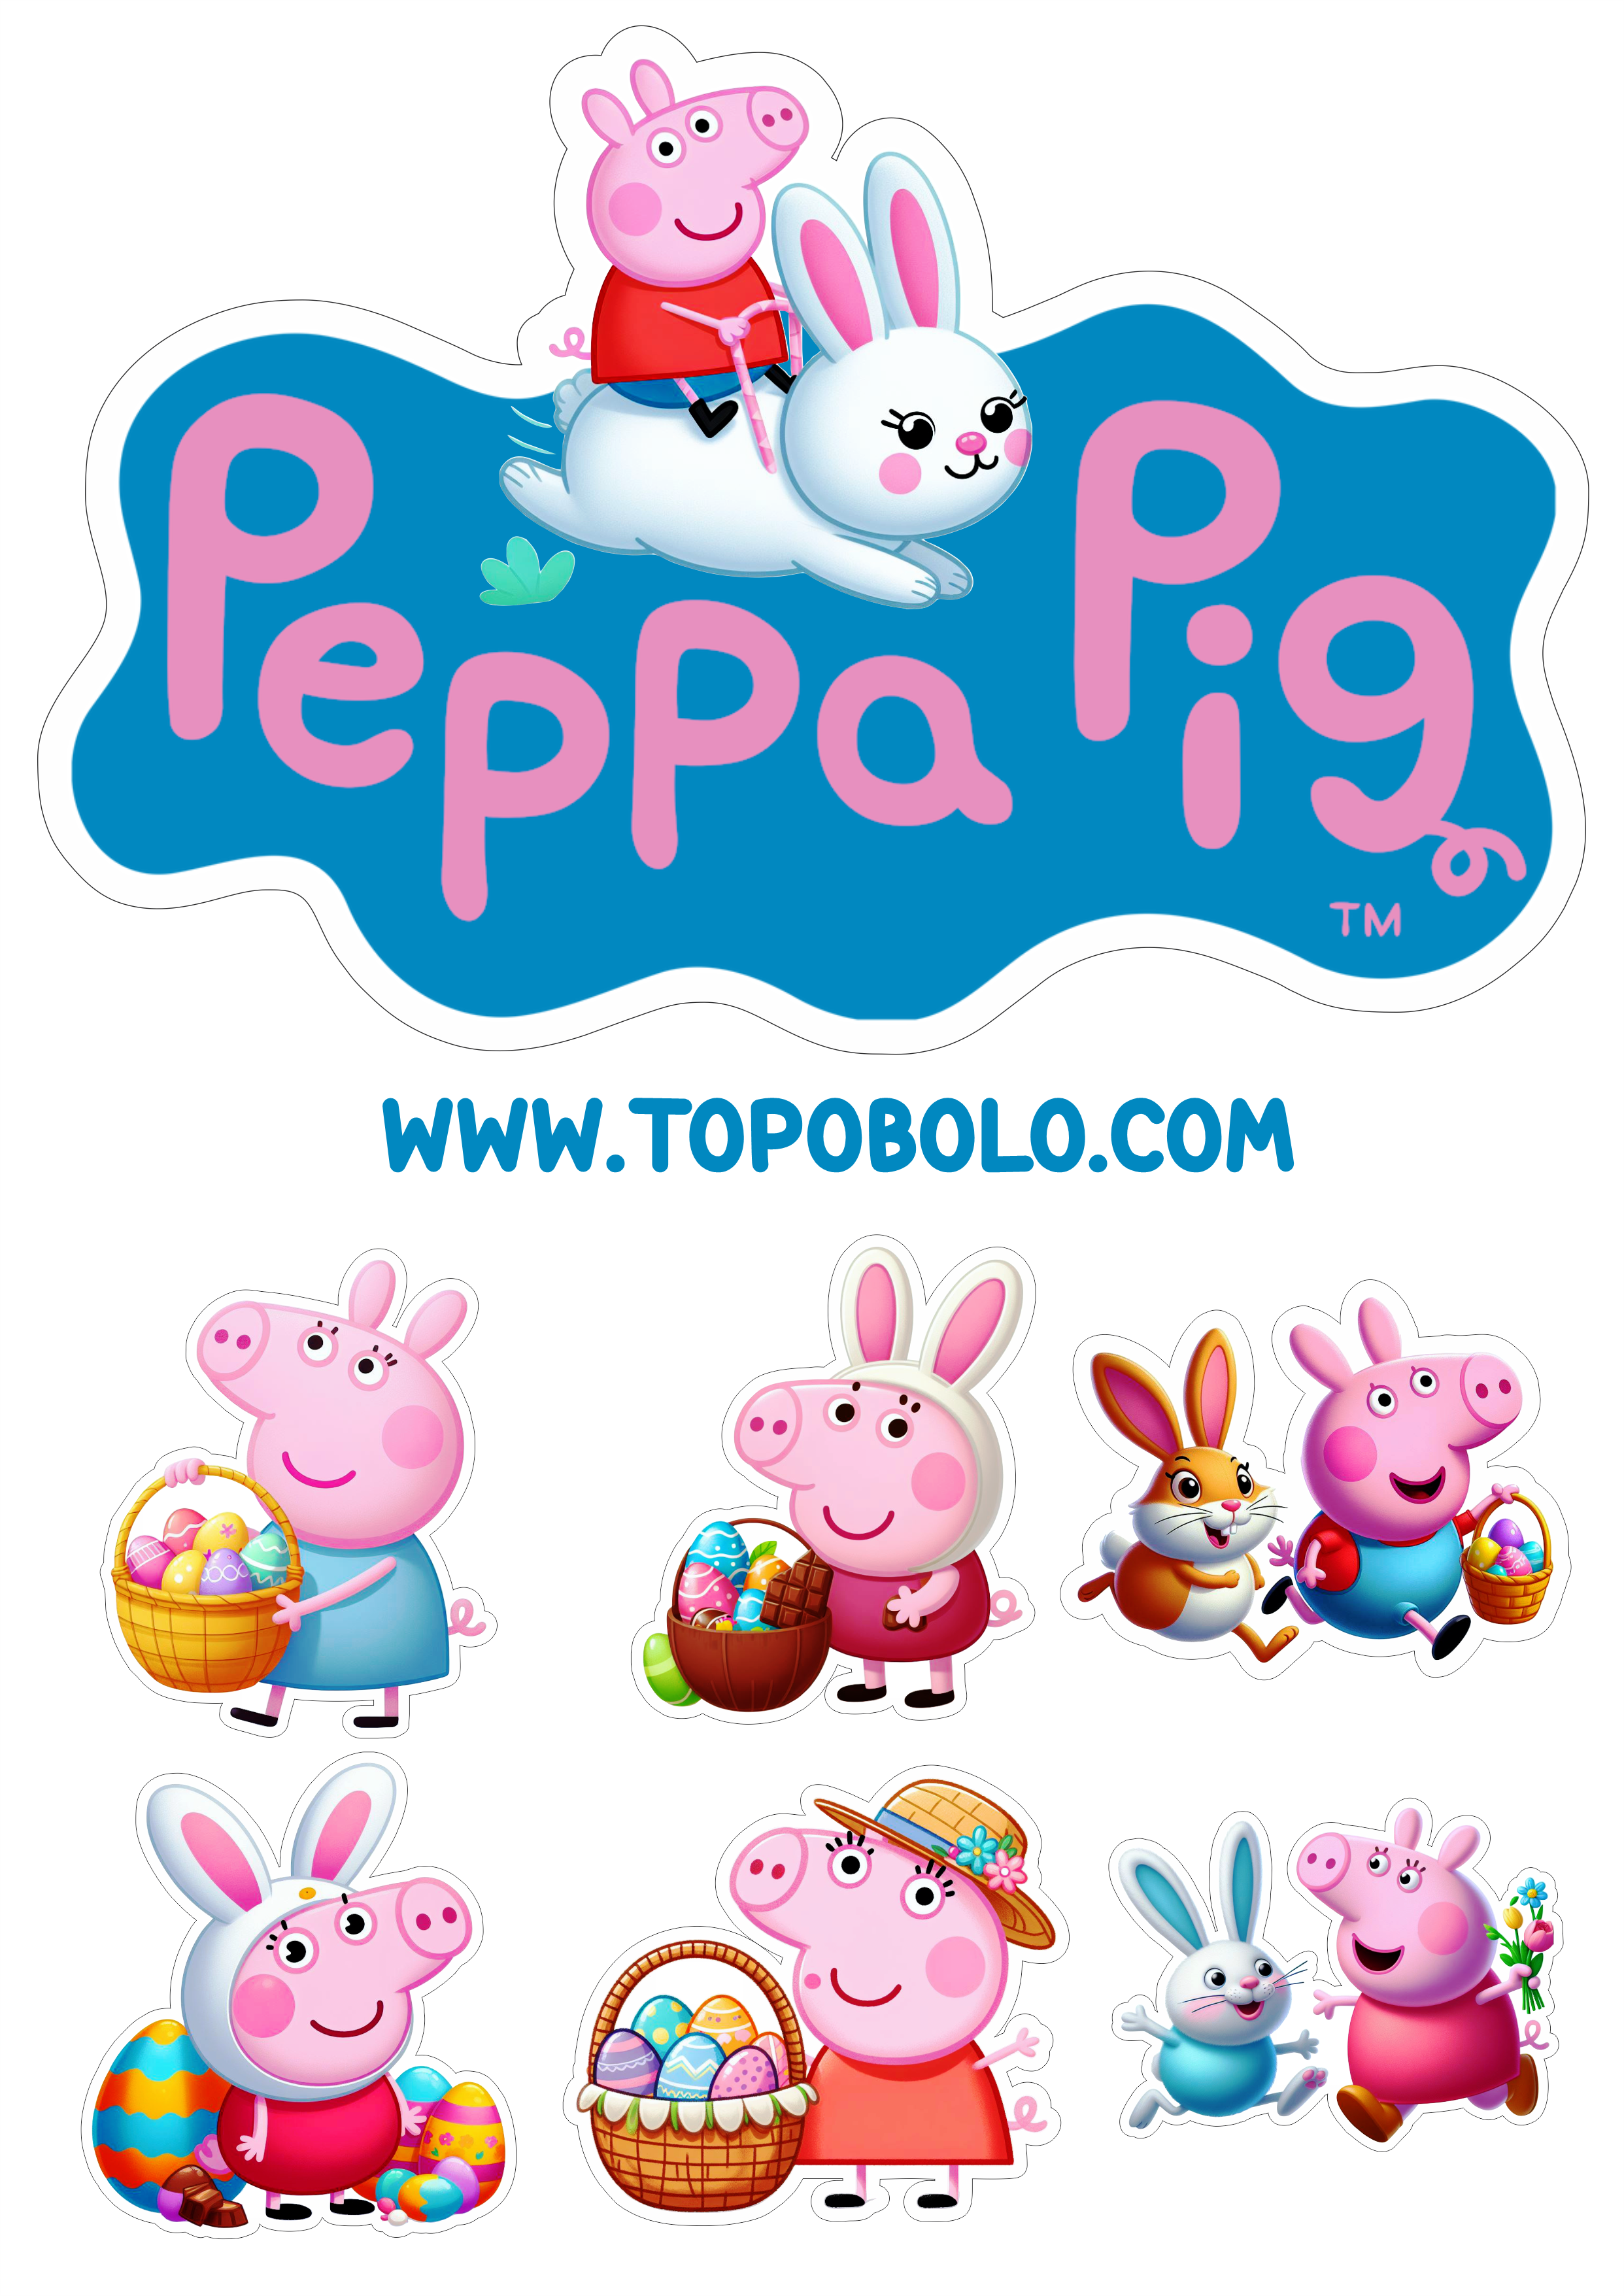 Topo de bolo Peppa Pig especial de páscoa aniversário infantil png